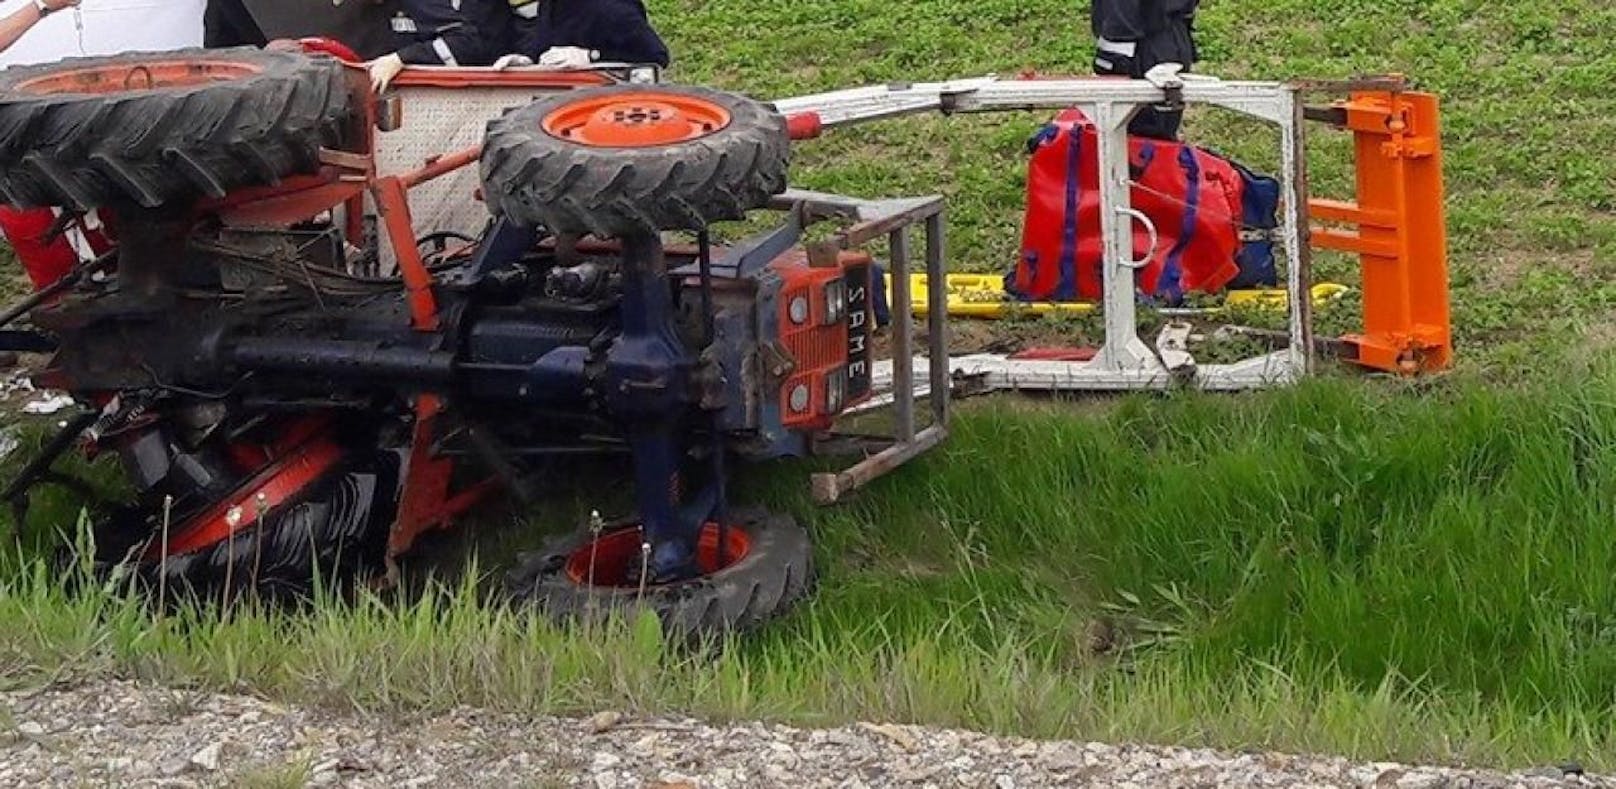 Traktor umgekippt: Lenker knallt gegen Scheibe